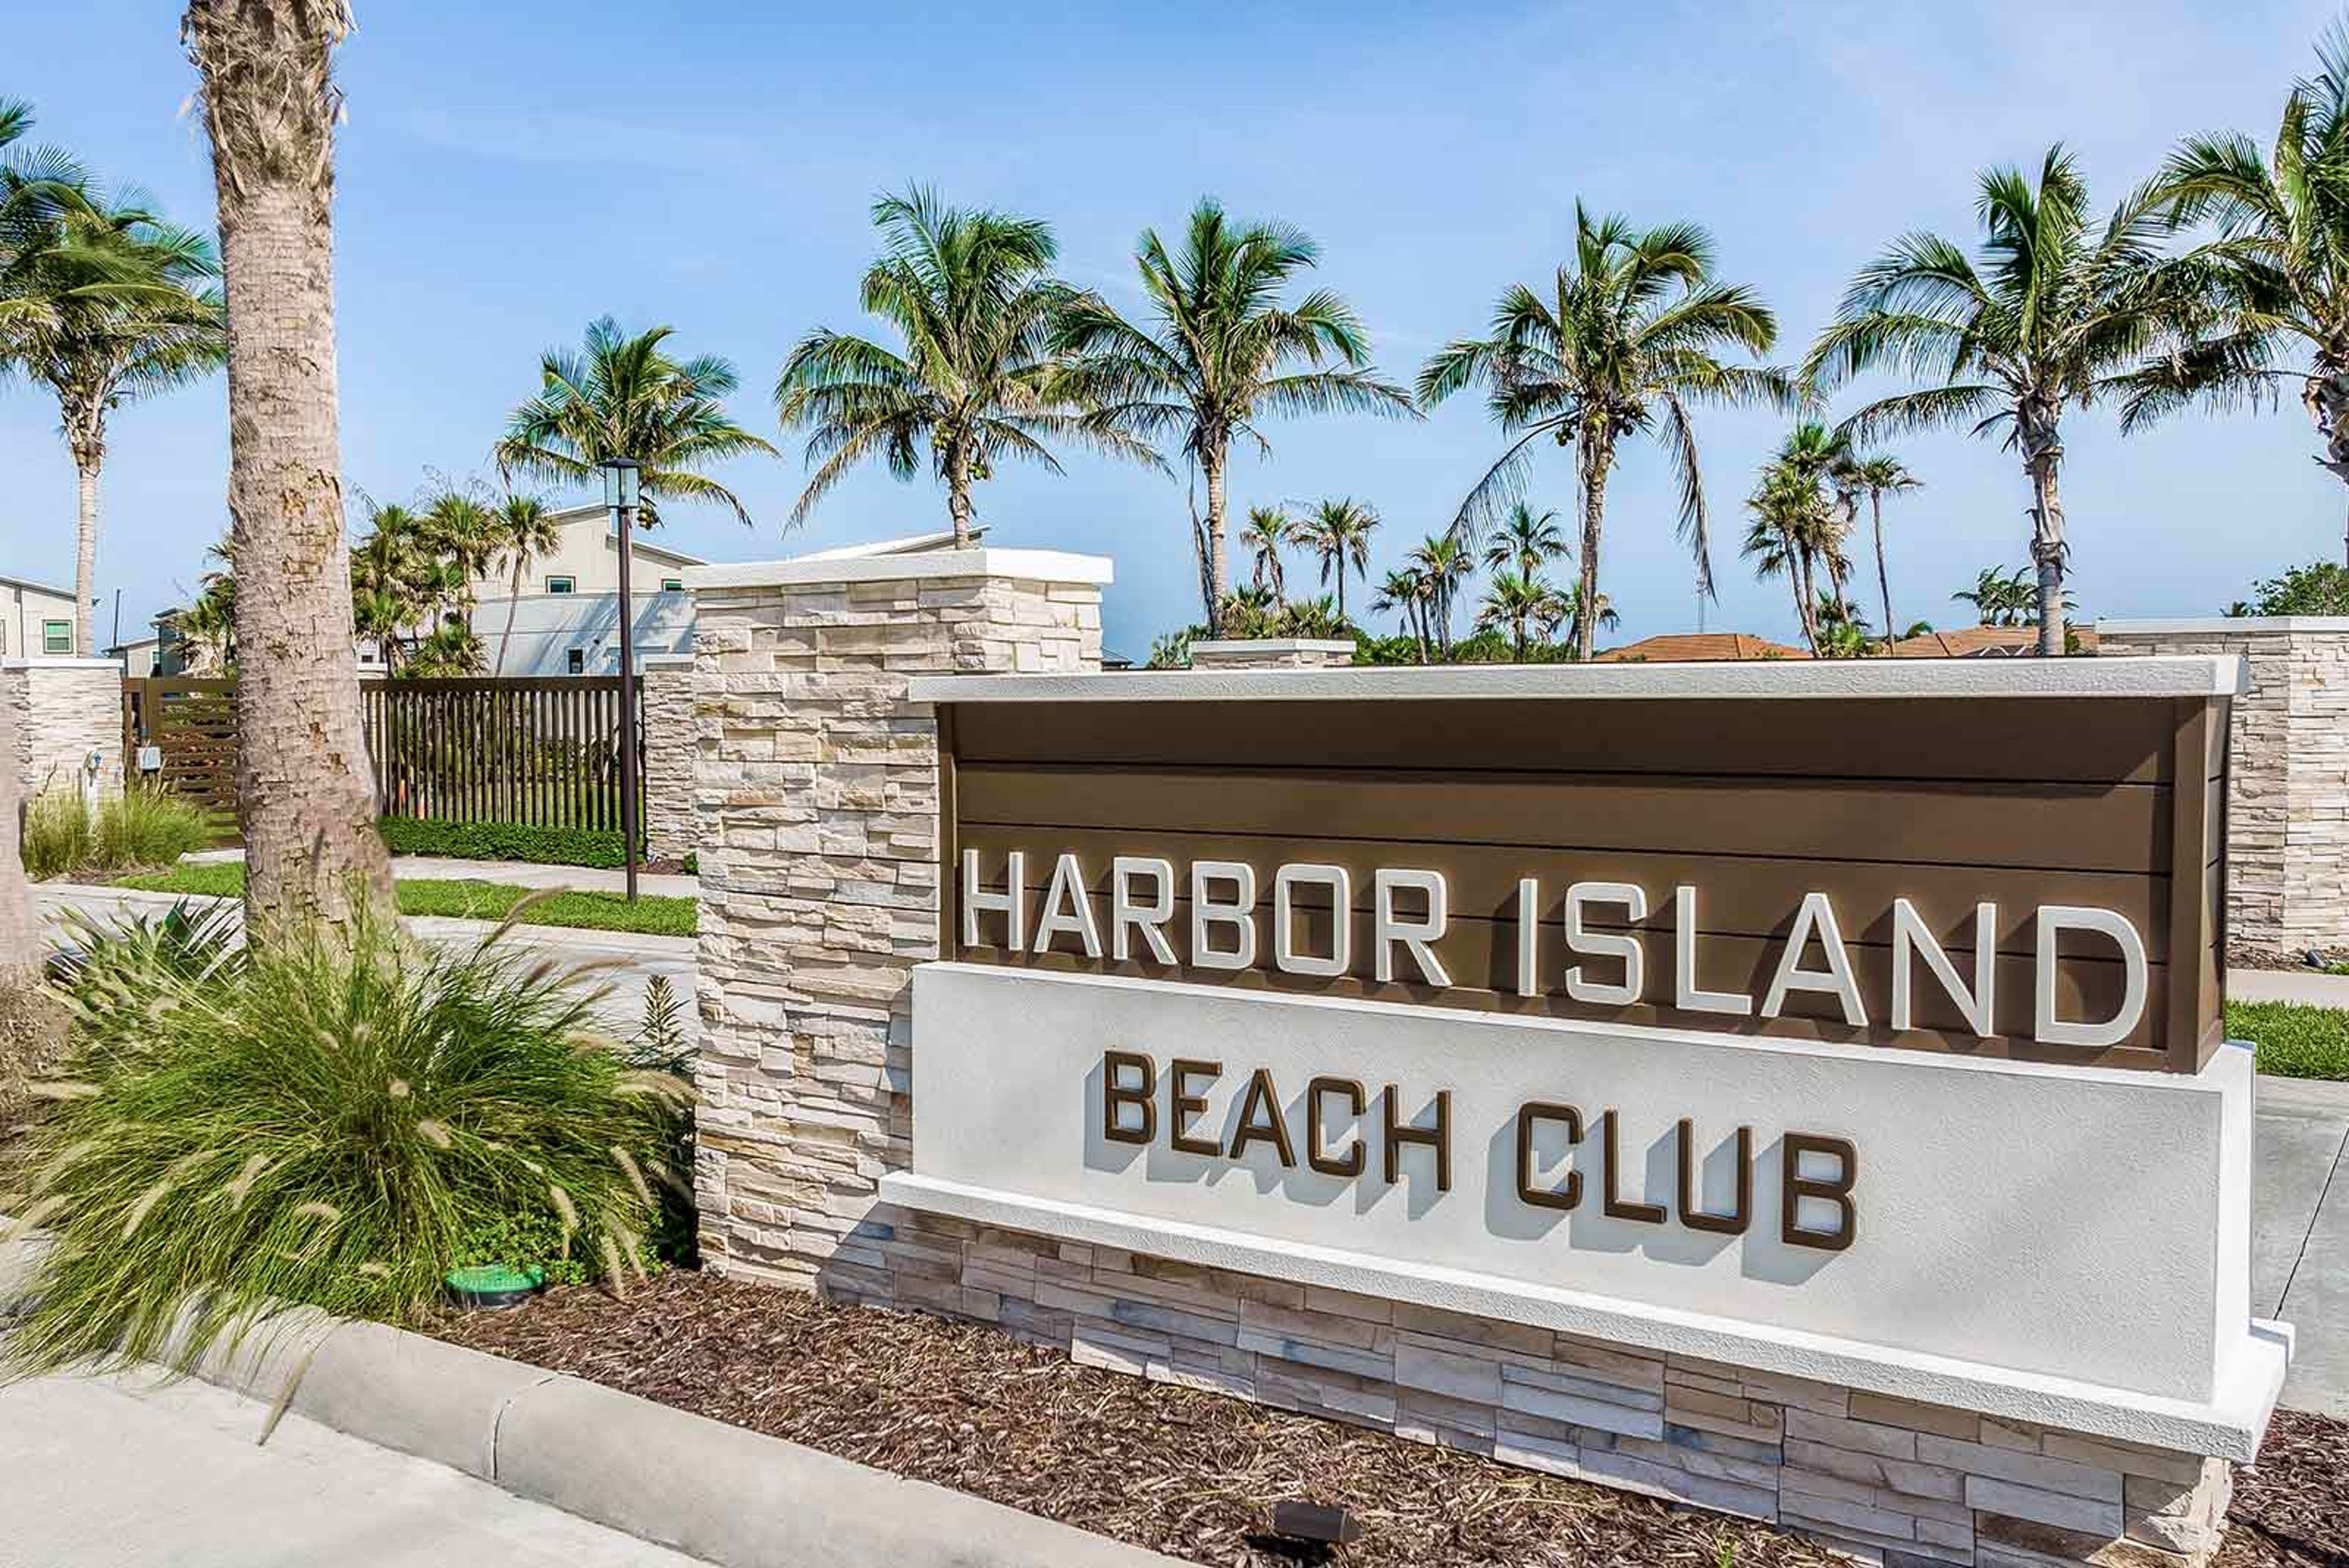 High Roller at Harbor Island Beach Club - 48